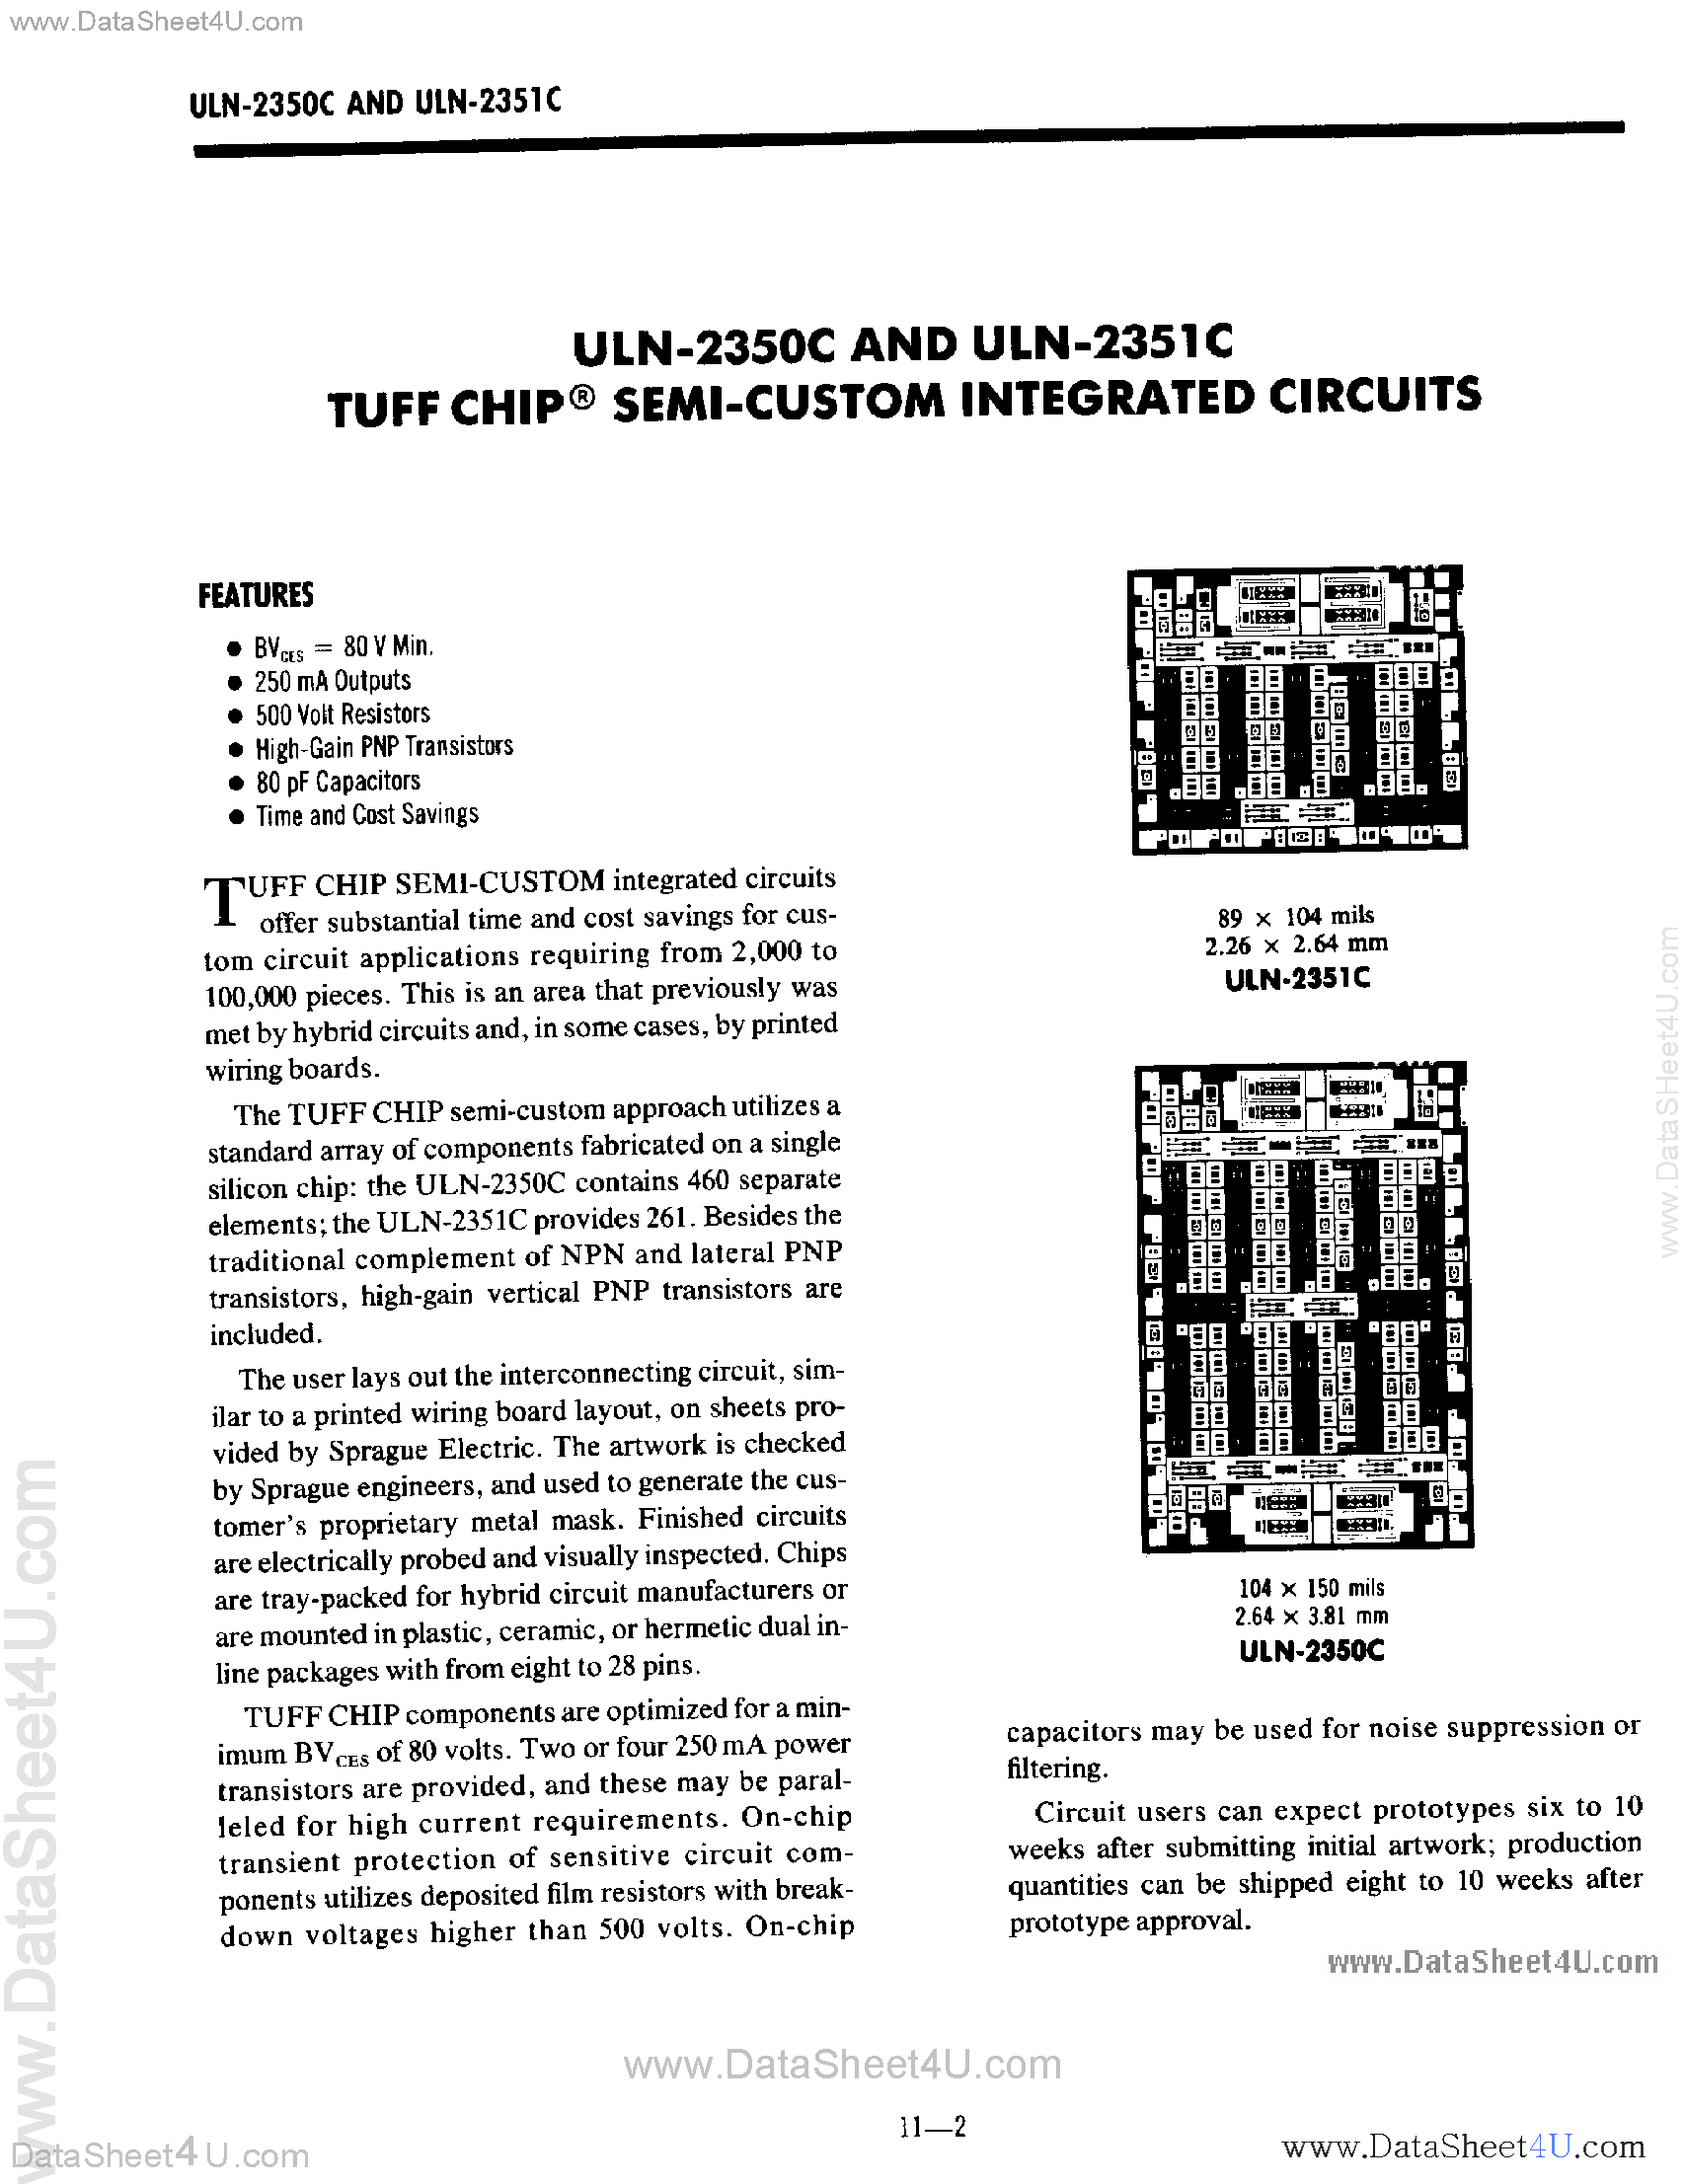 Даташит ULN-2350C-(ULN-2350C / ULN-2351C) Tuff Chip Semi Custom Integrated Circuits страница 1